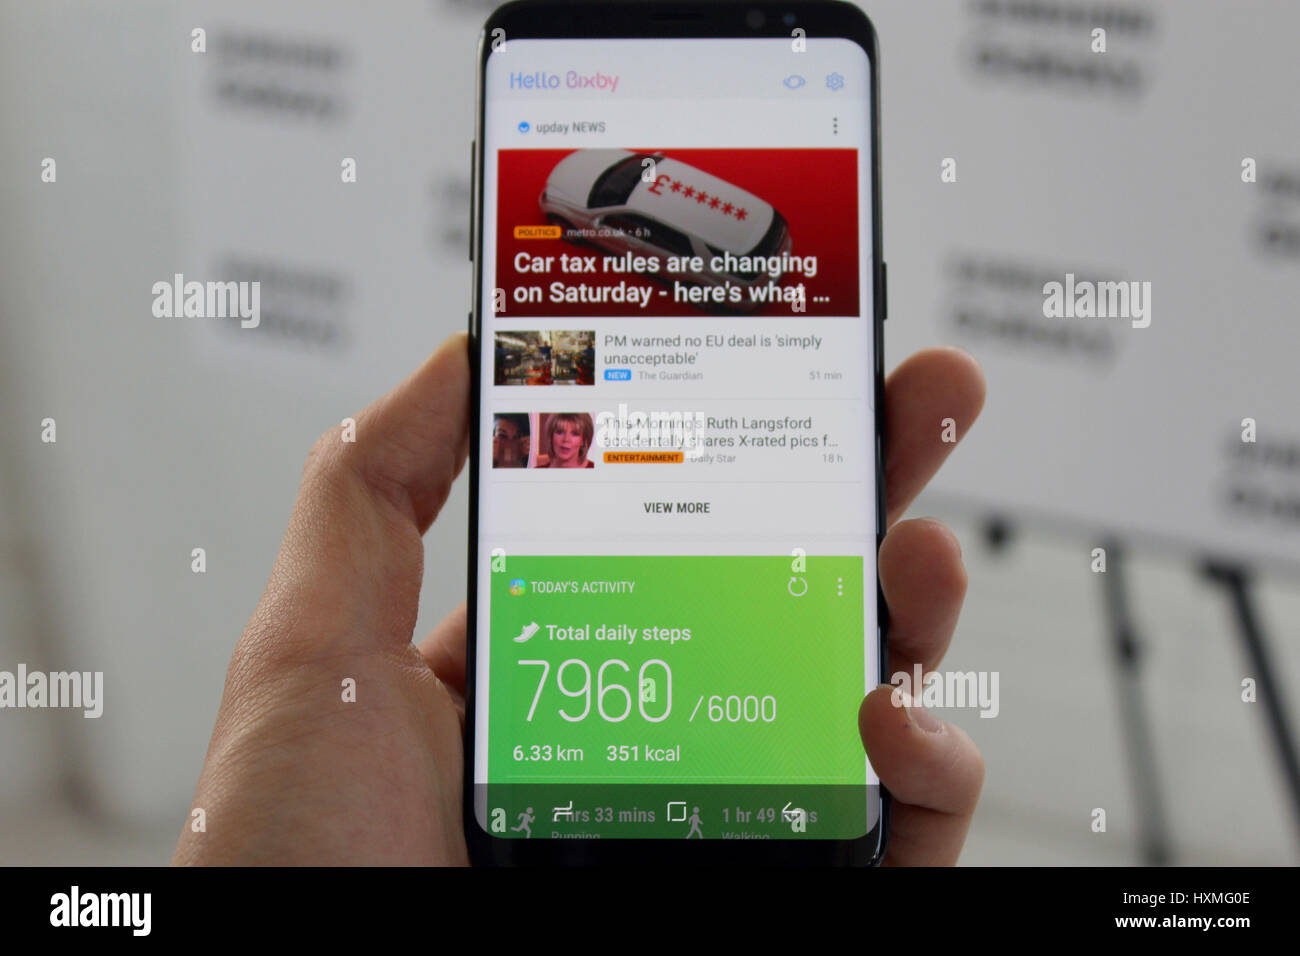 Il nuovo Samsung Galaxy S8 sul display a Londra, la società del primo poiché essi sono stati costretti a ricordare la sua nota7 dispositivo nel tardo 2016 sul fuoco e i timori per la sicurezza. Foto Stock